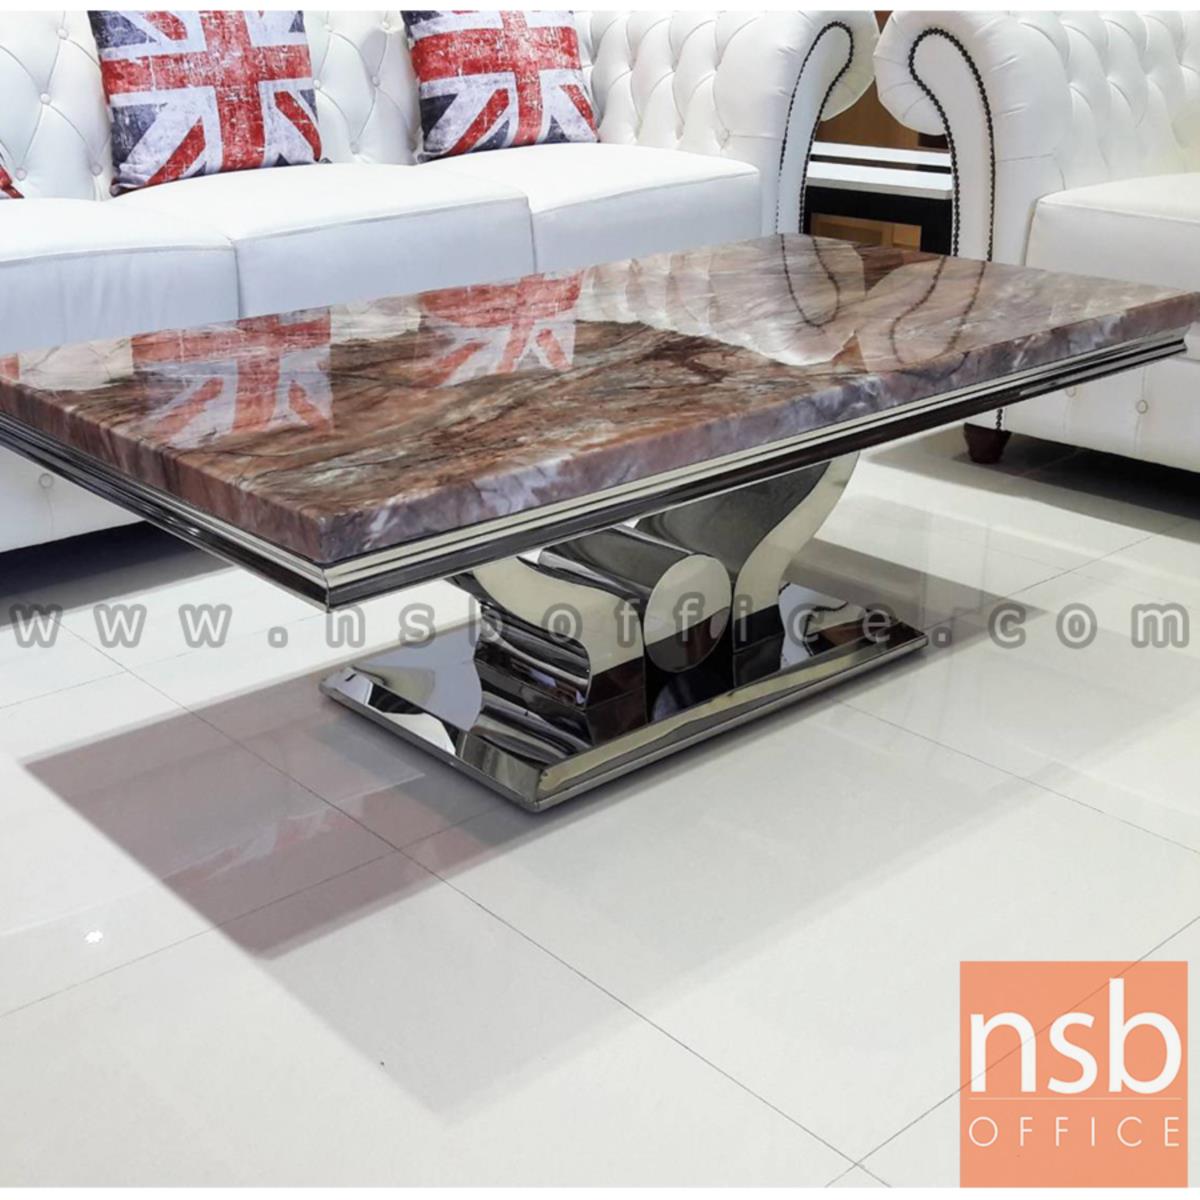 โต๊ะกลางหินอ่อน รุ่น Nash (แนช) ขนาด 130W cm. ขาโลหะมันเงา